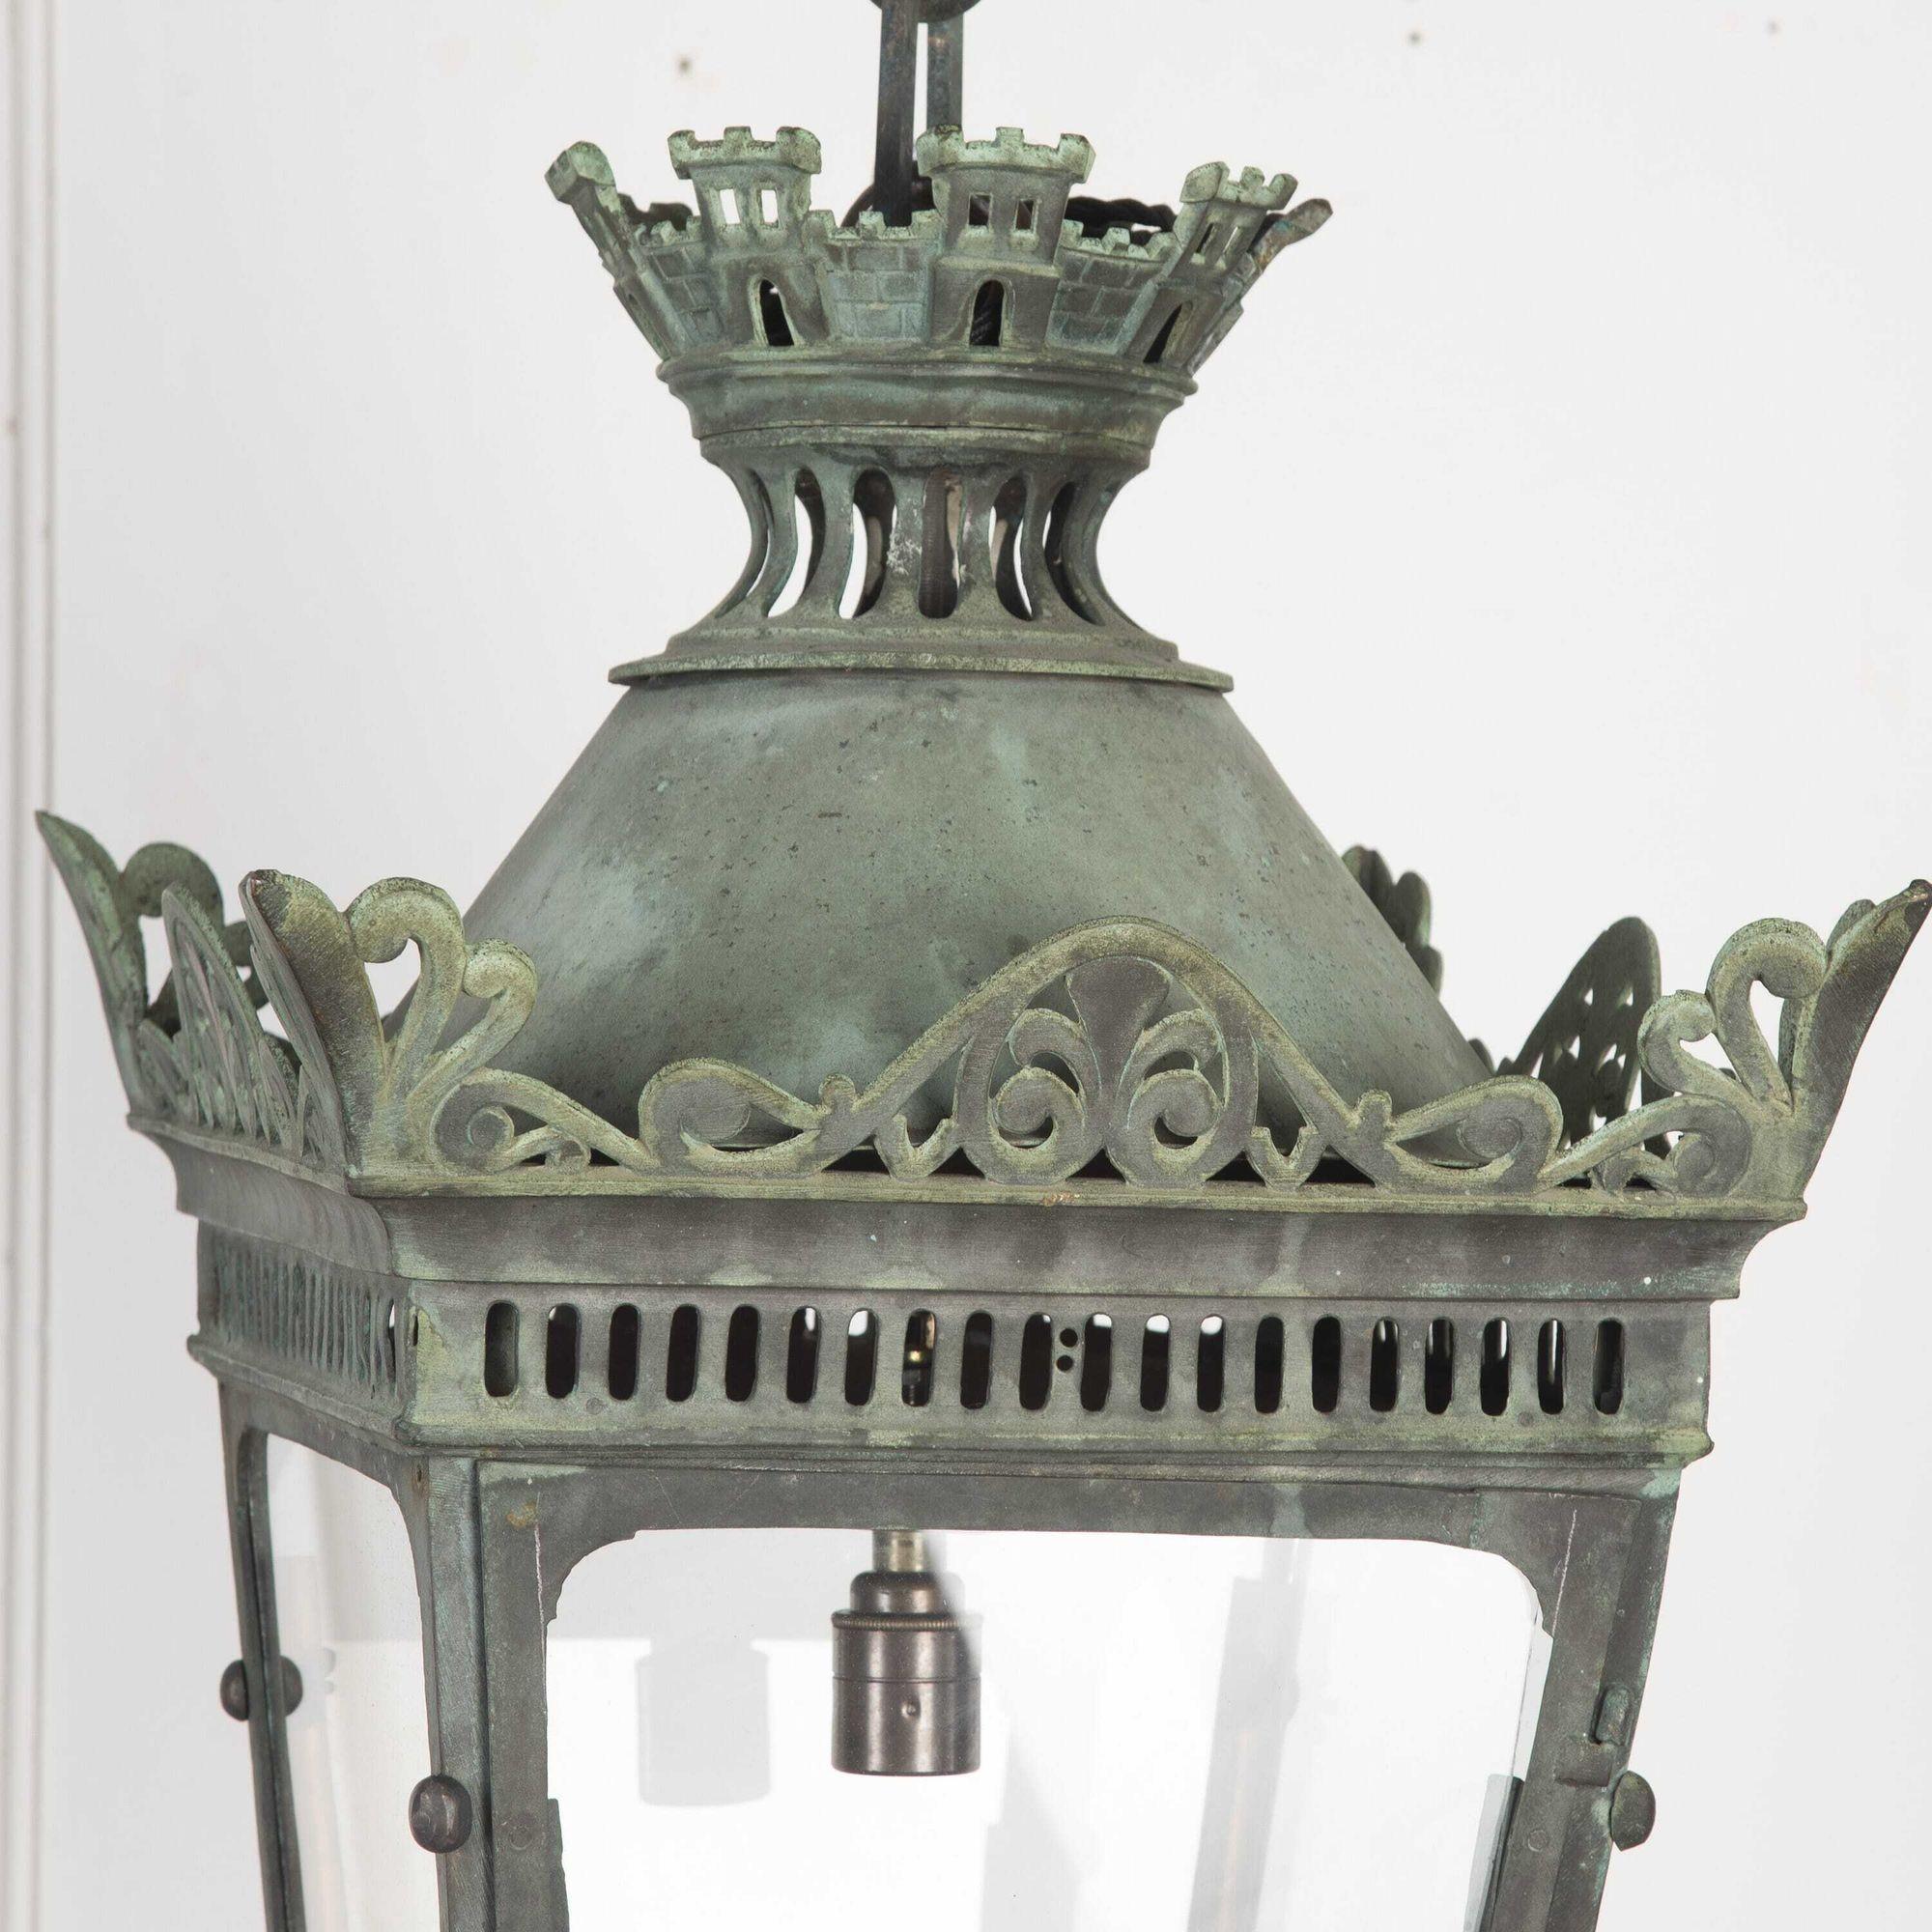 Fantastische französische Grünspan-Kupfer-Hängelaterne des späten 19. Jahrhunderts mit Kette.
Dies ist eine fabelhafte voll glasierte Grünspan-Kupfer-Laterne mit einem schönen durchbrochenen Rahmen mit einem Türmchen oben mit einer sechseckigen